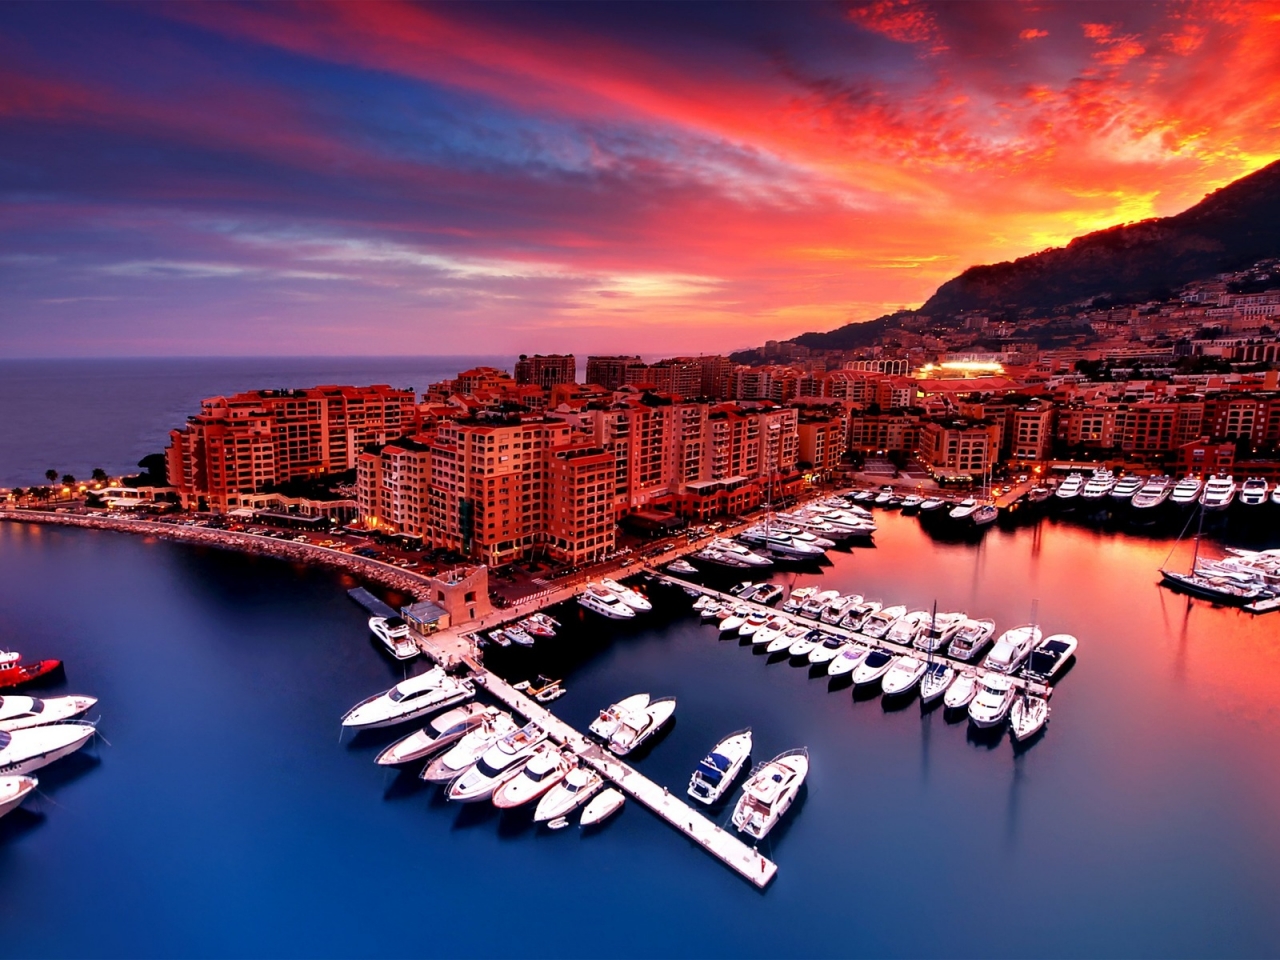 Sunrise in Monaco for 1280 x 960 resolution